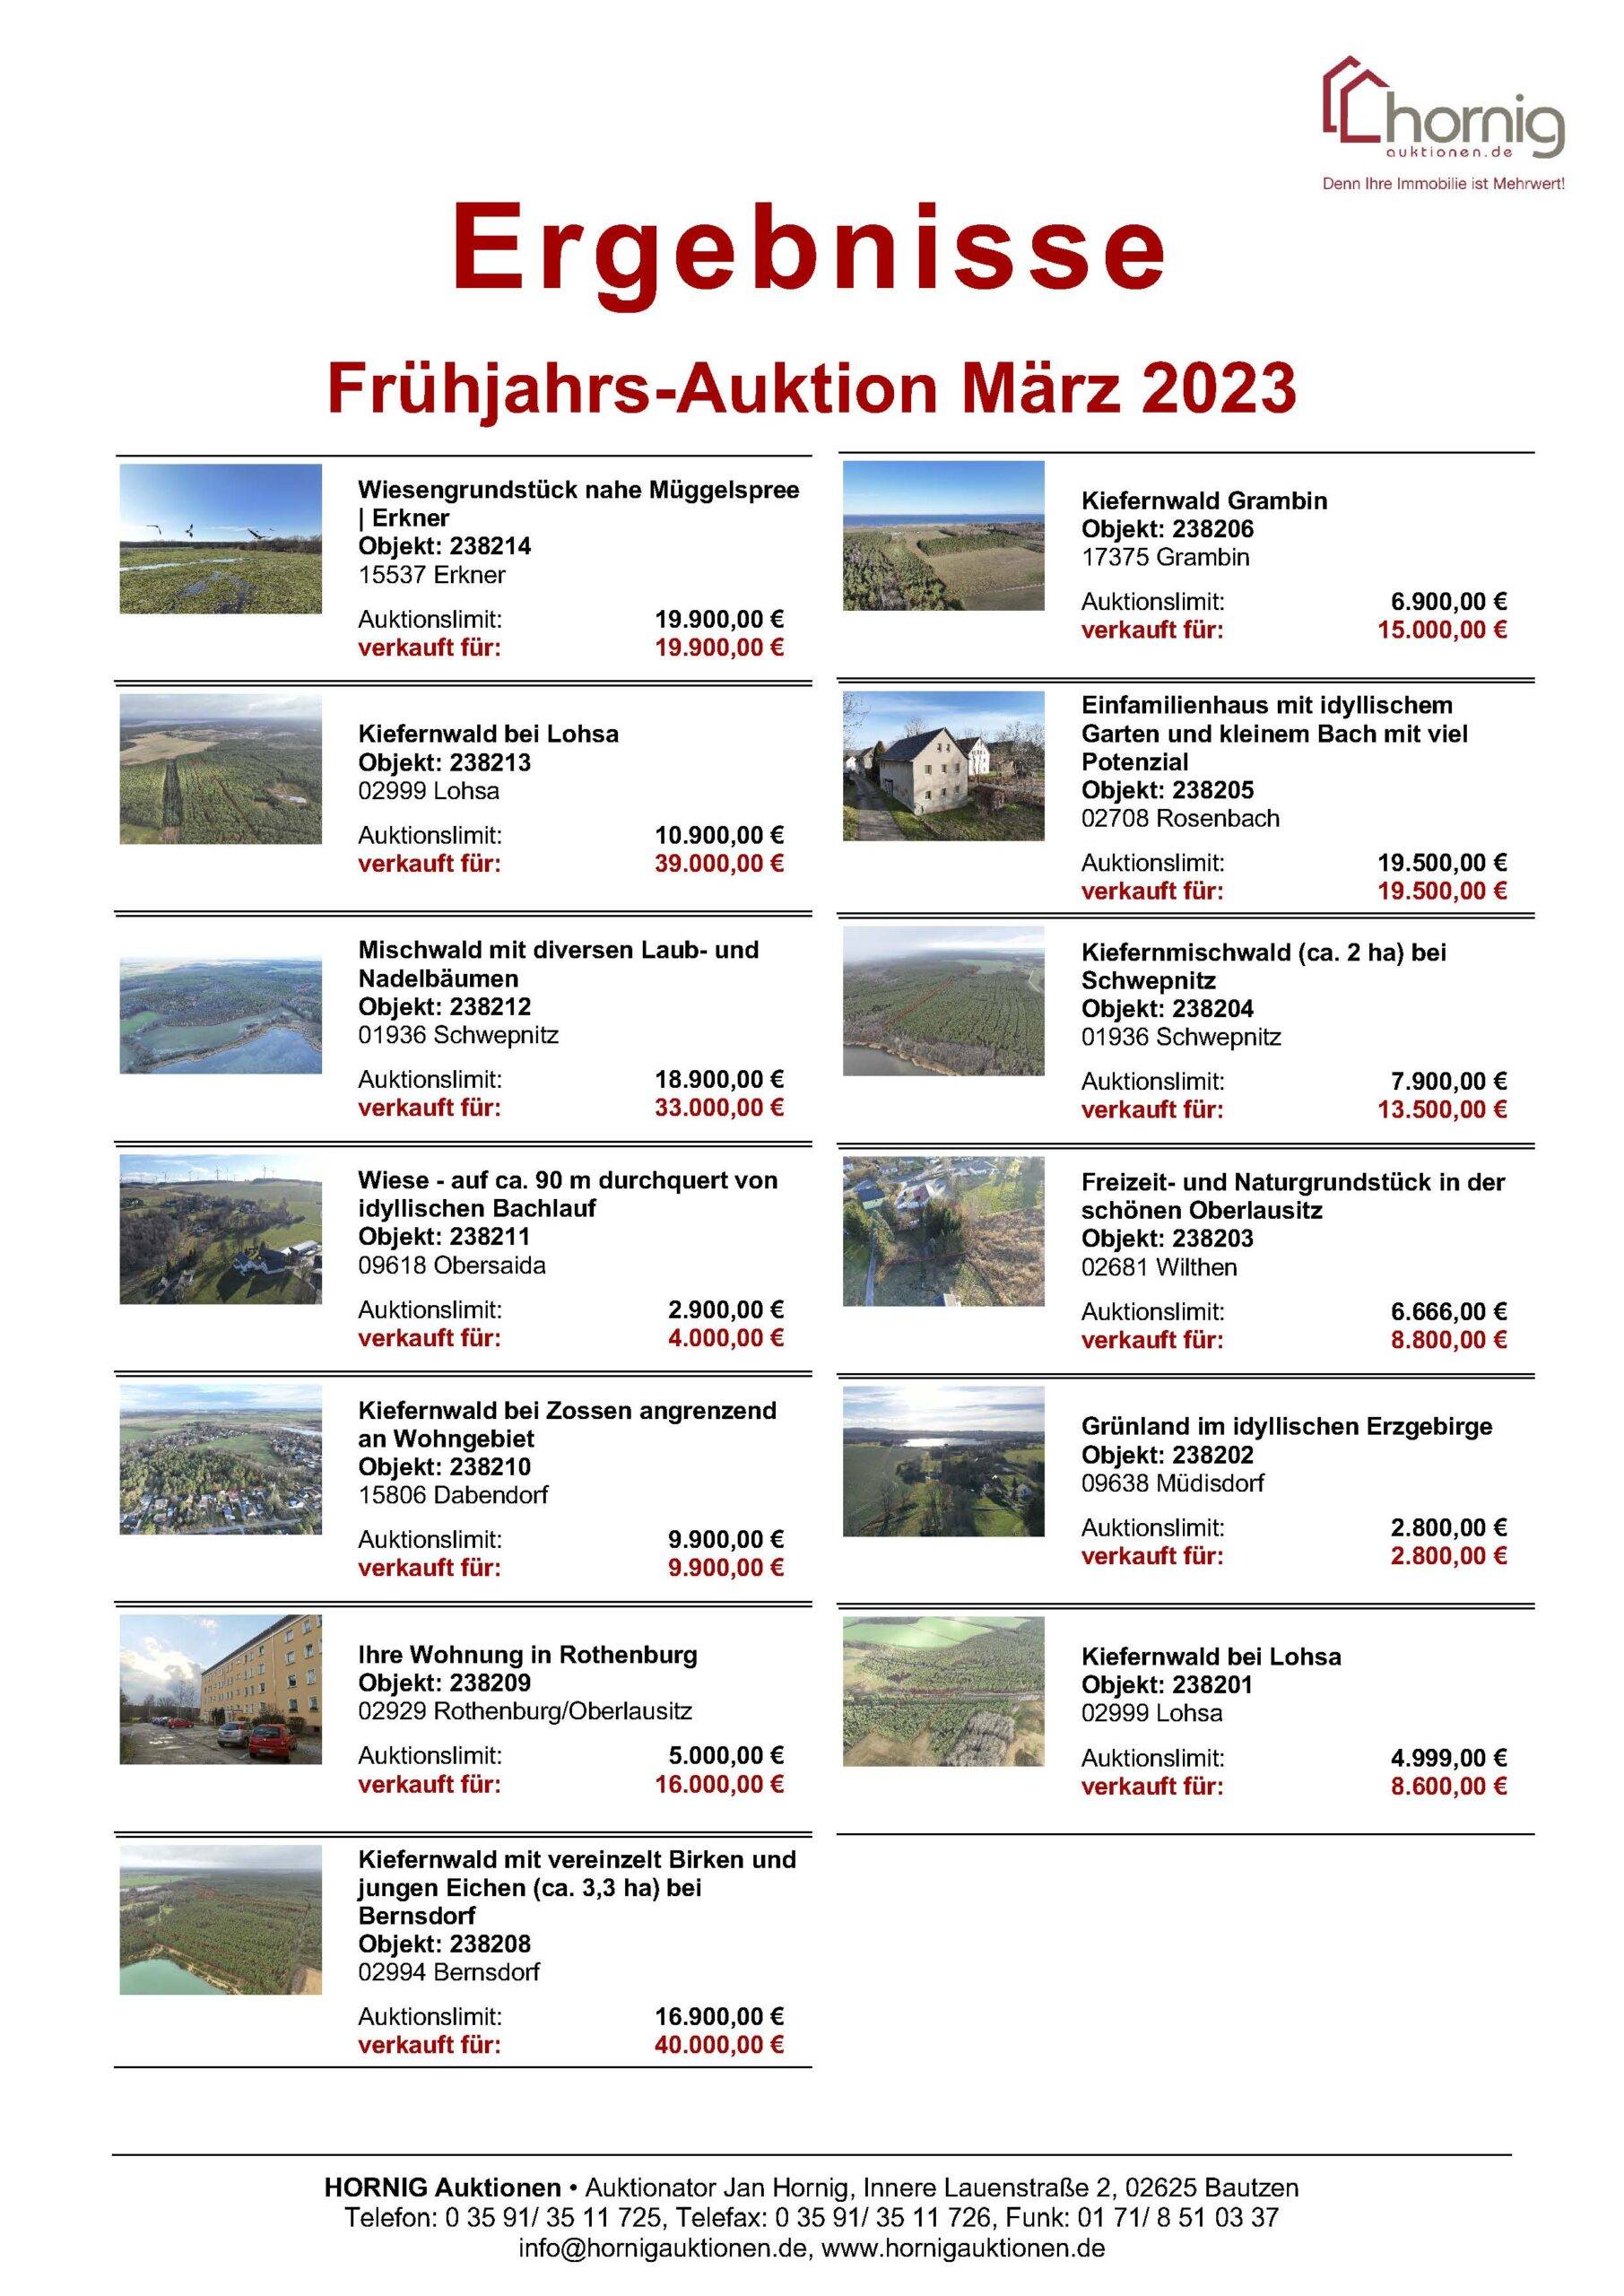 Ergebnisliste Frühjahrs-Auktion 2023